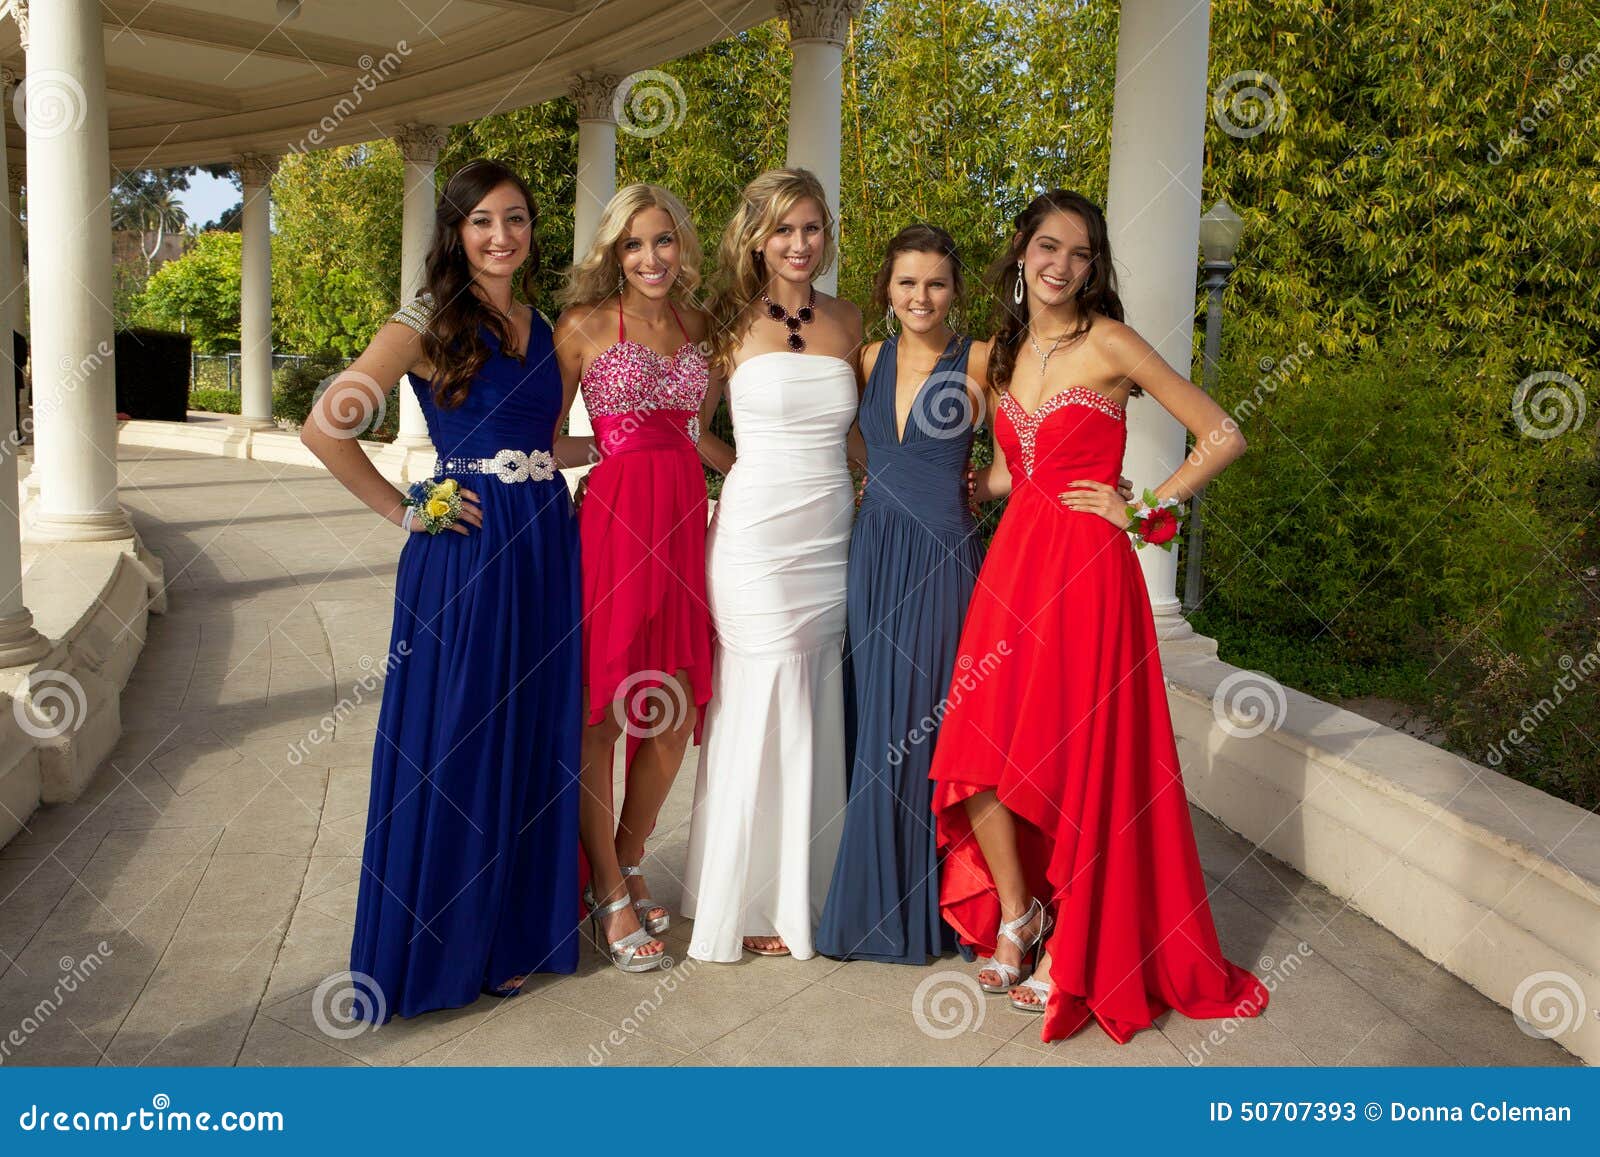 Buy > prom dress girls > in stock